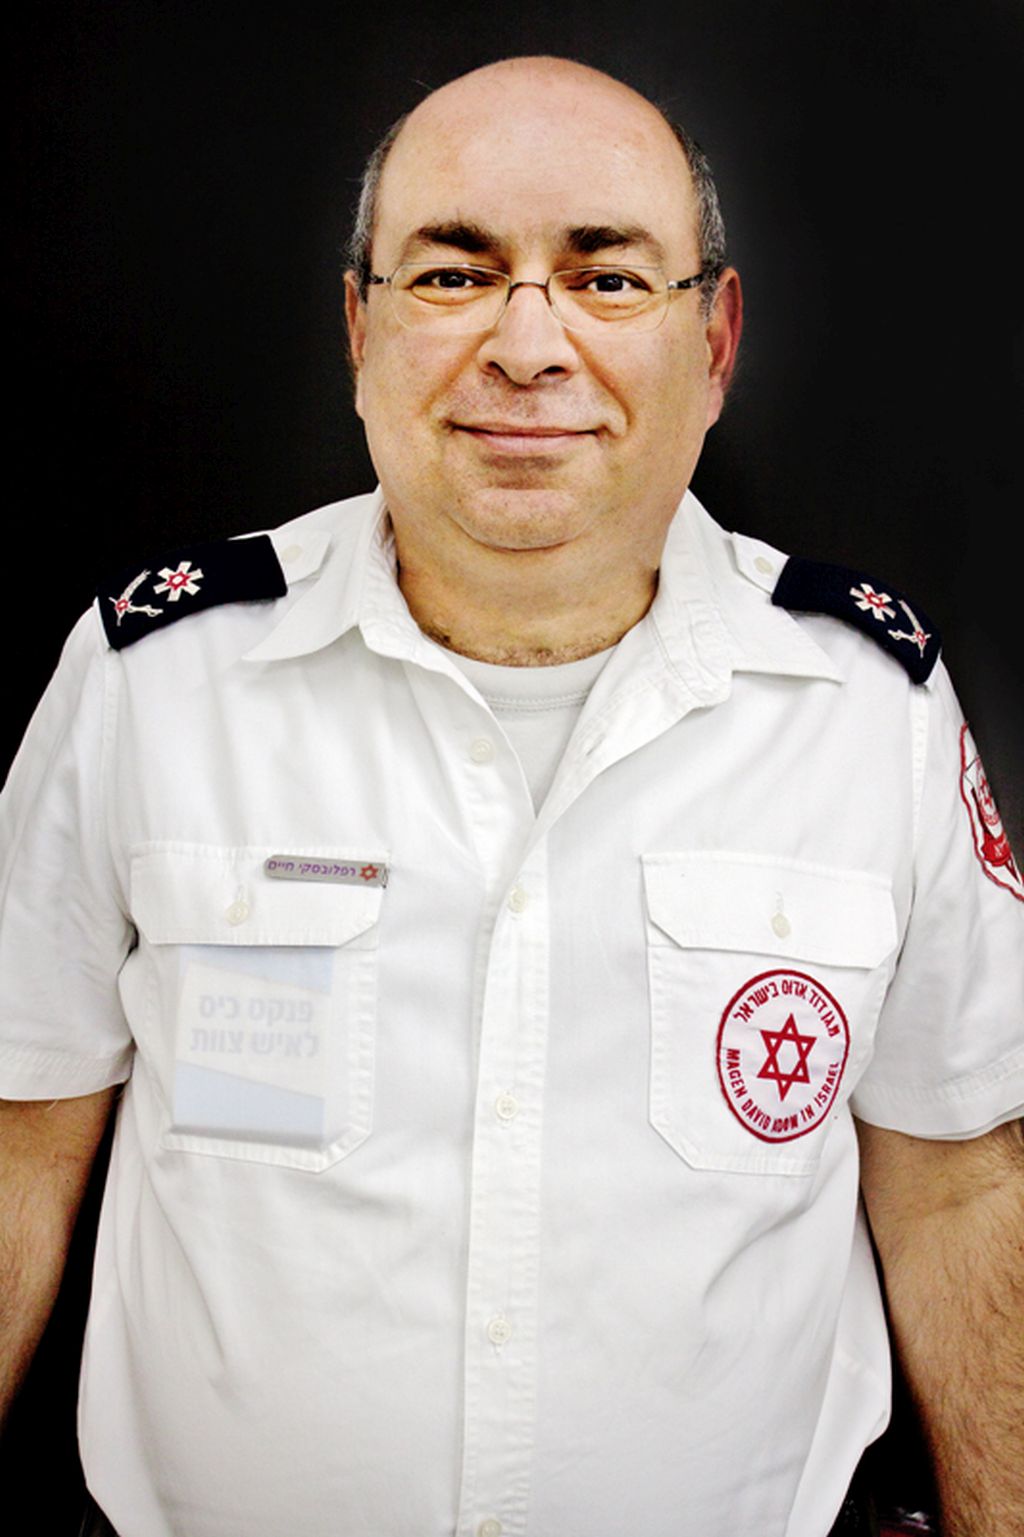 Haim Rafalowski, Coordinador Nacional de Gestión de Riesgo del Magen David Adom